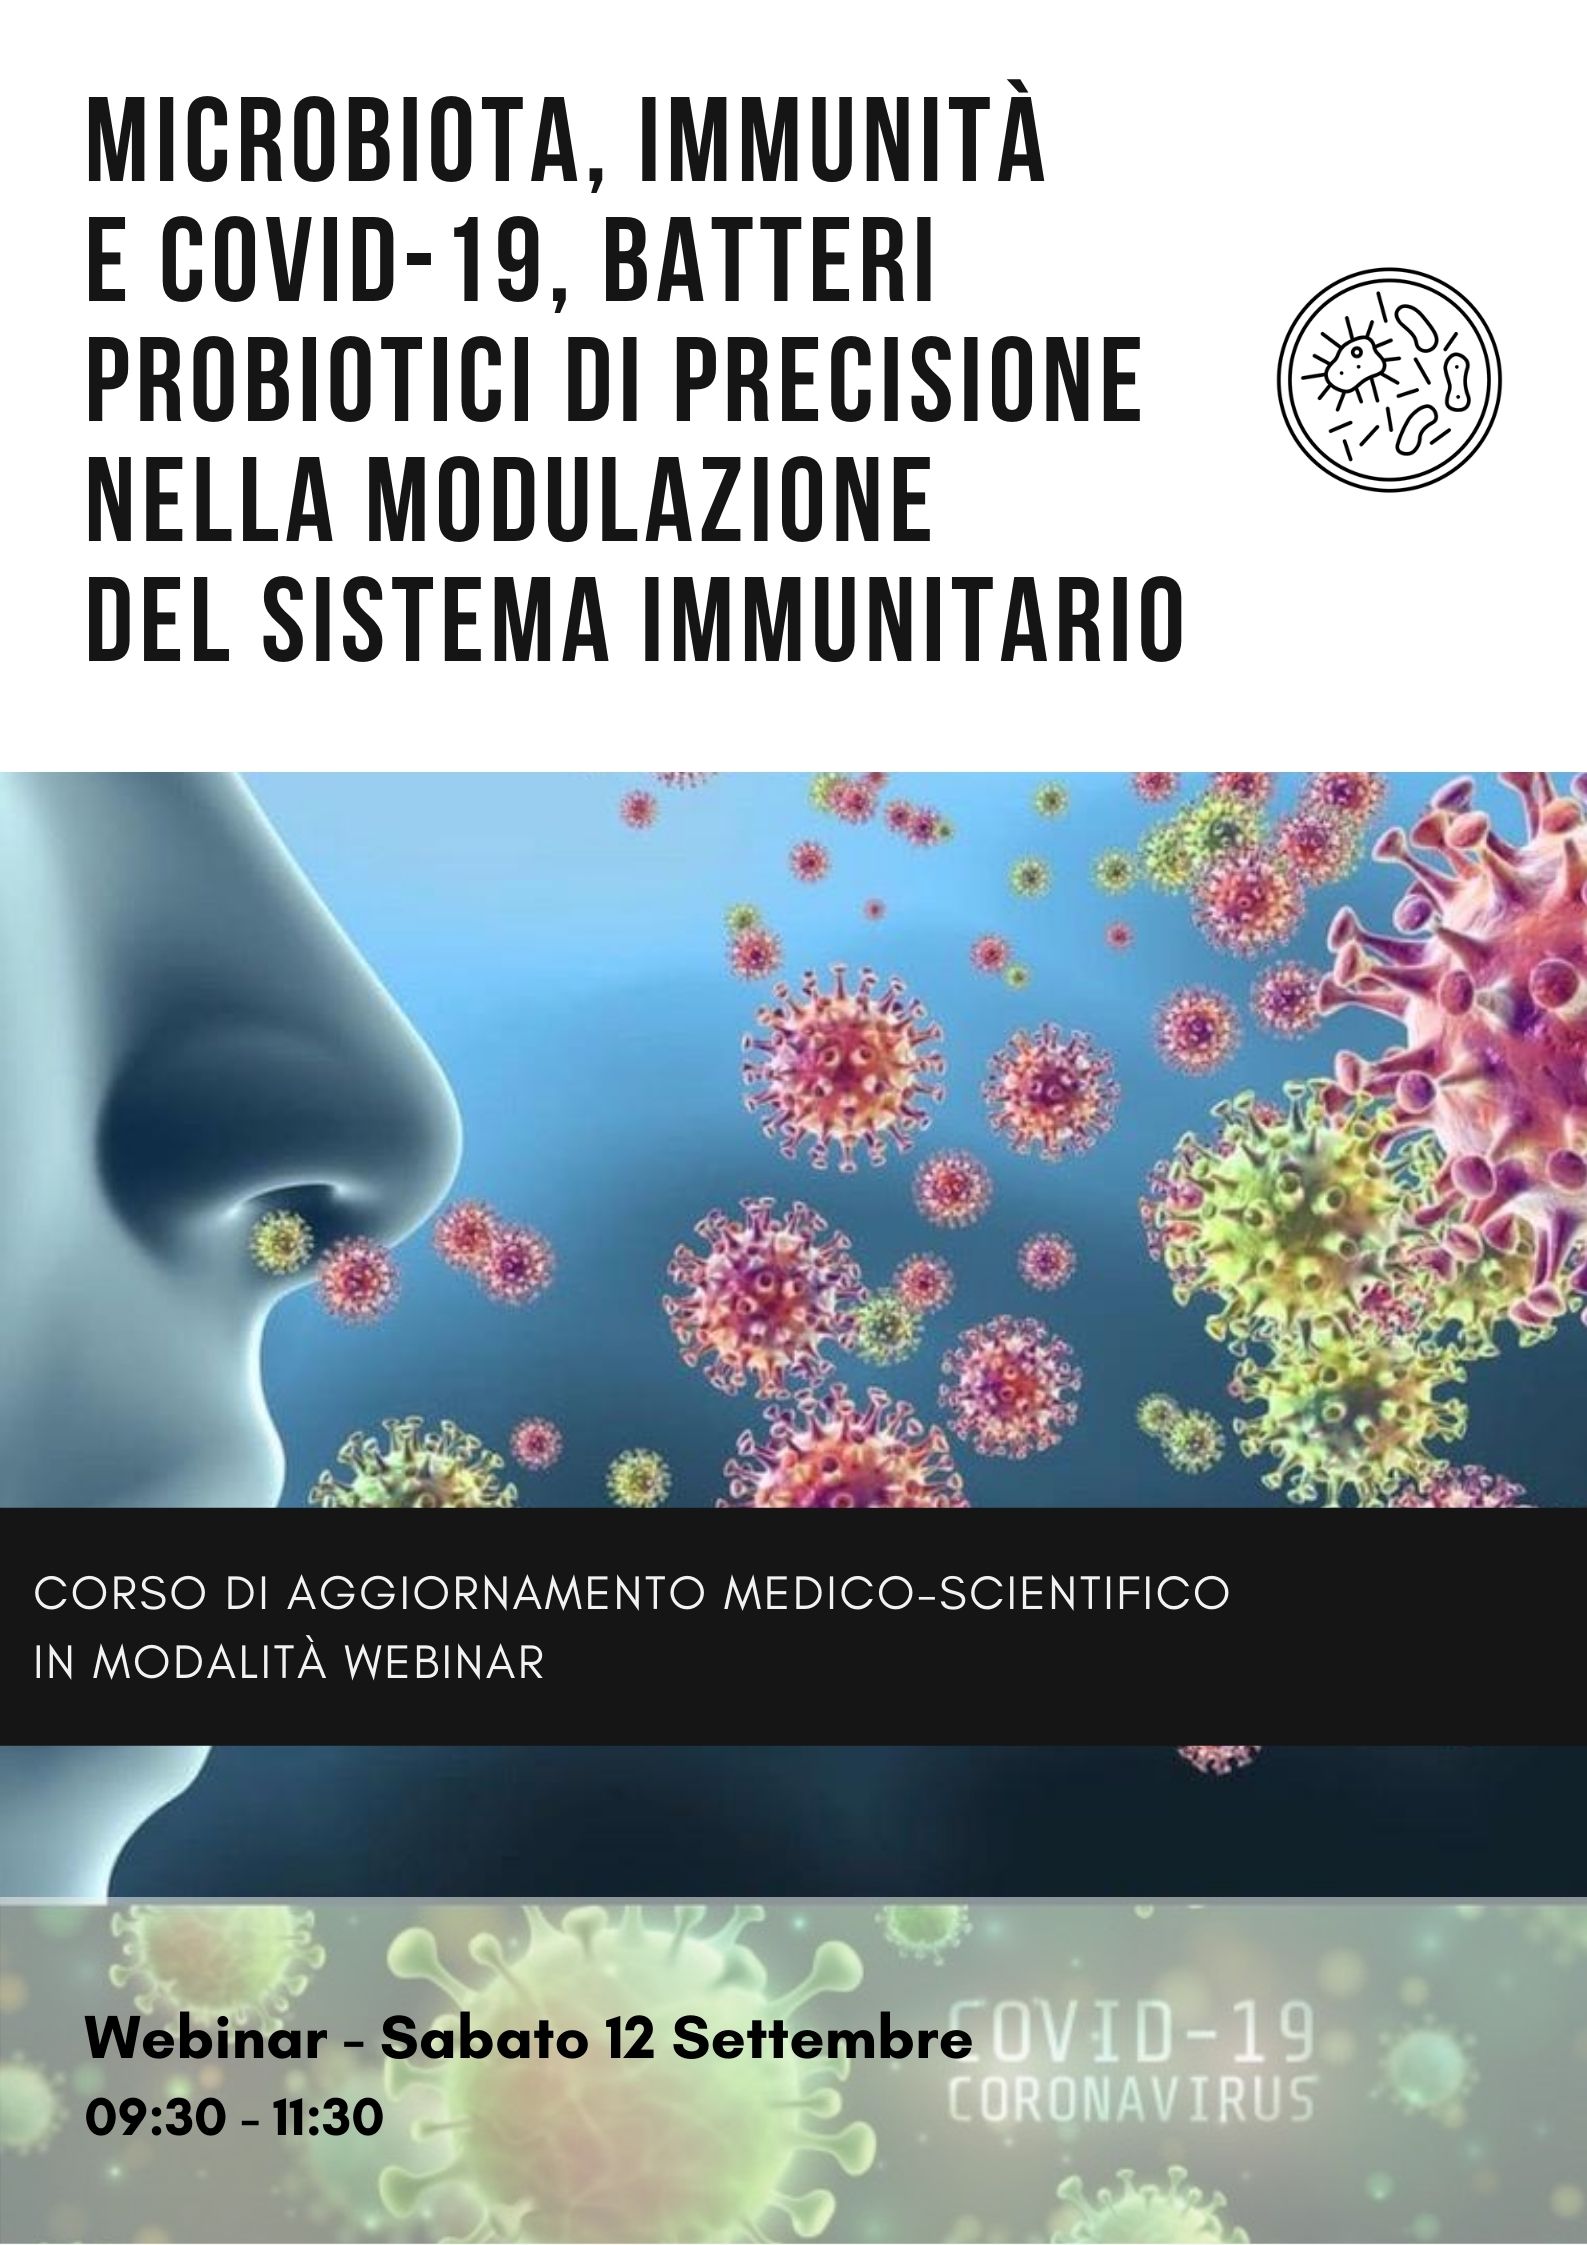 Microbiota, immunità e Covid-19, batteri probiotici di precisione nella modulazione del sistema immunitario